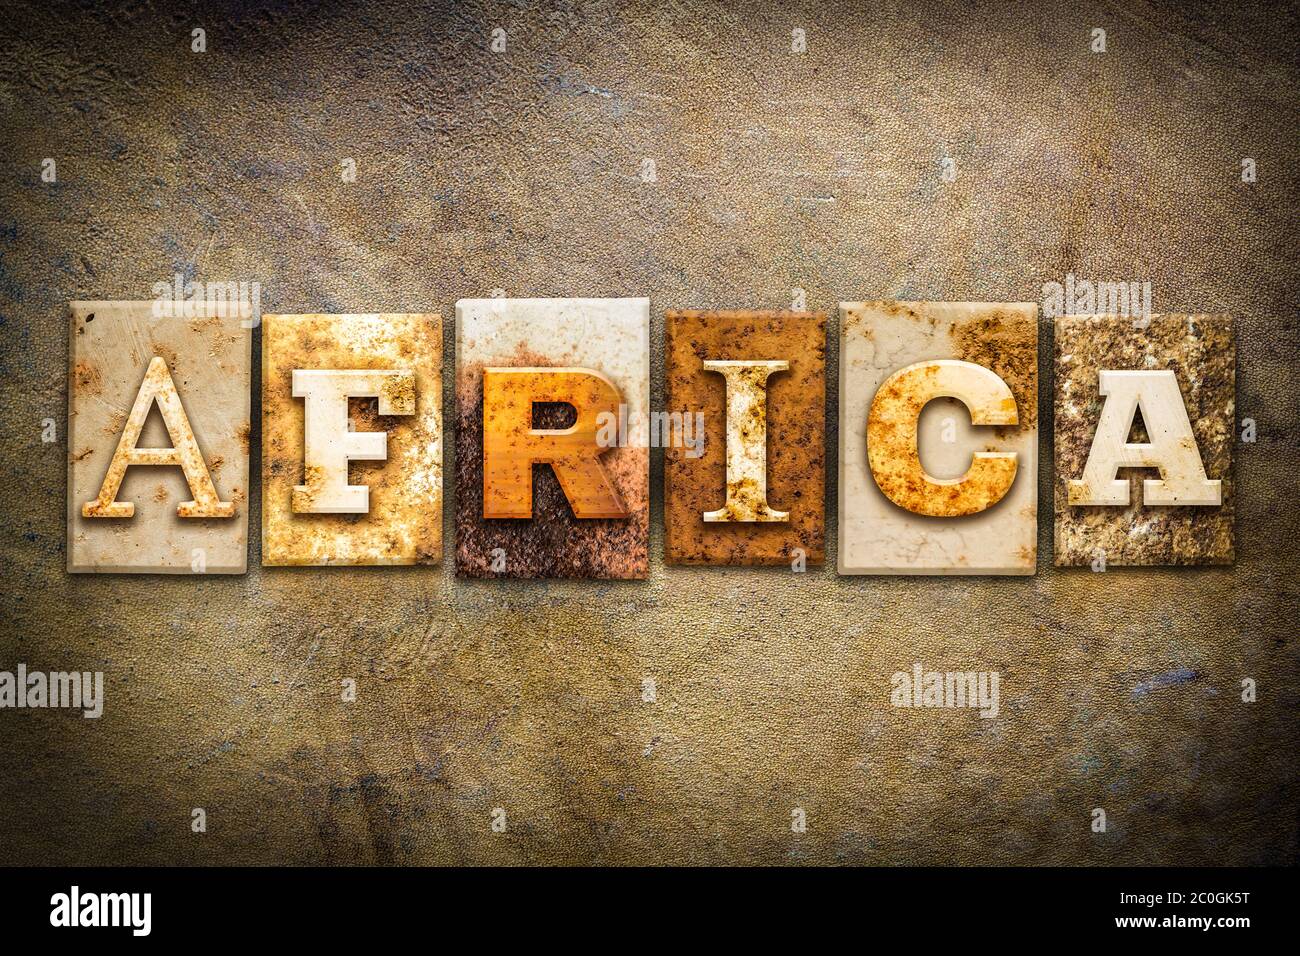 Afrique concept typographie thème cuir Banque D'Images